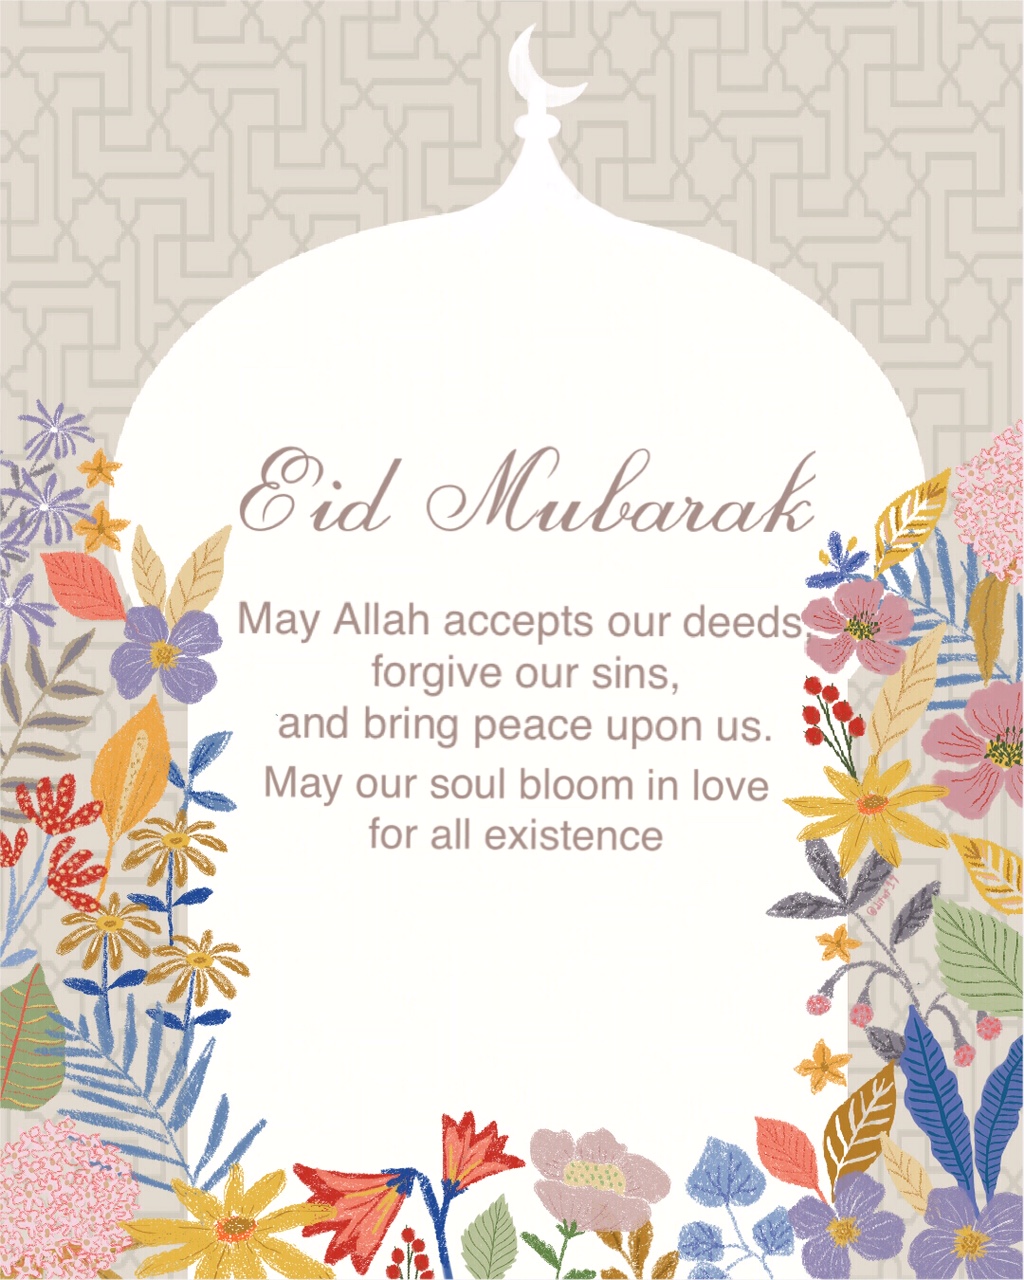 Eid Mubarak 1440 H  Cokelat dan Hujan